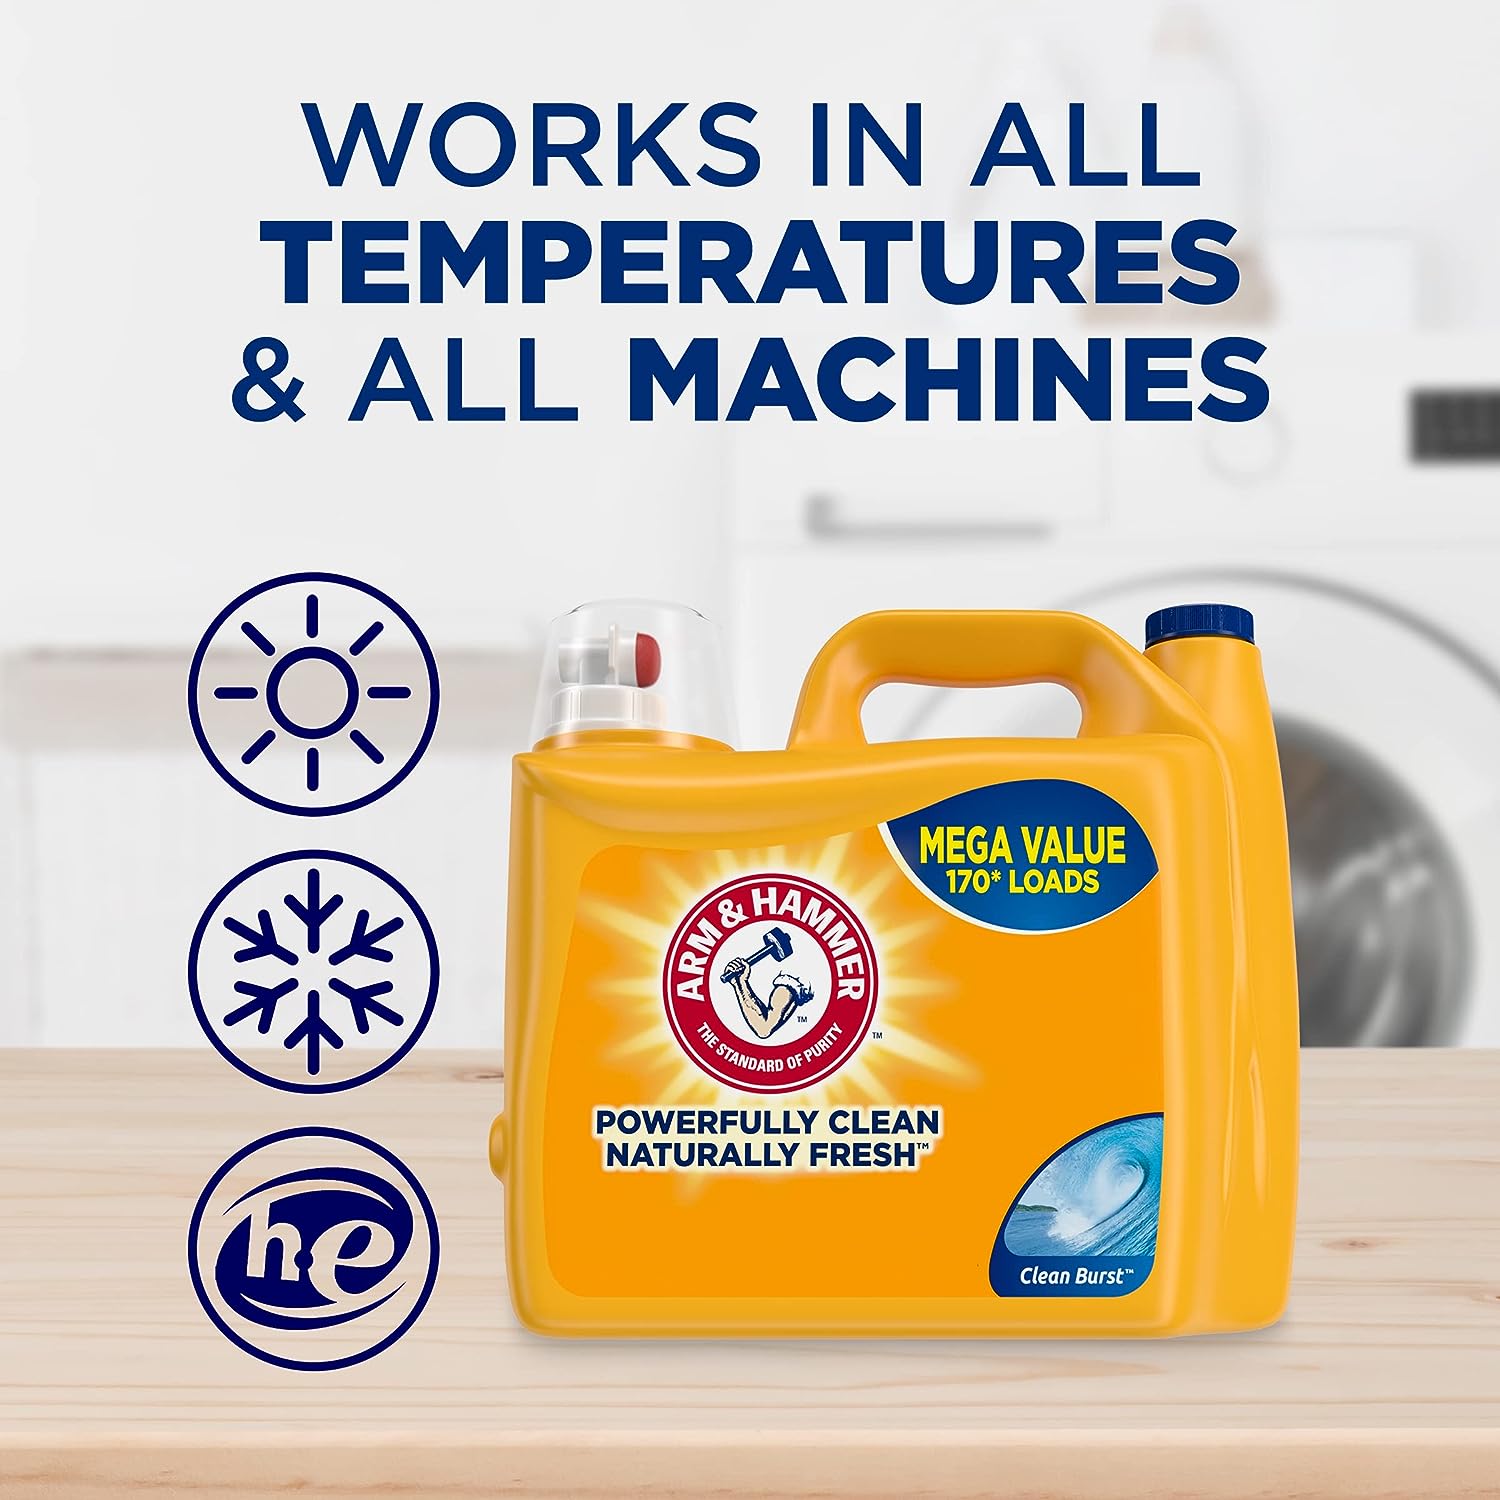 Detergente líquido para ropa ARM & HAMMER más OxiClean, fragancia fresca,  quitamanchas y de alta eficiencia